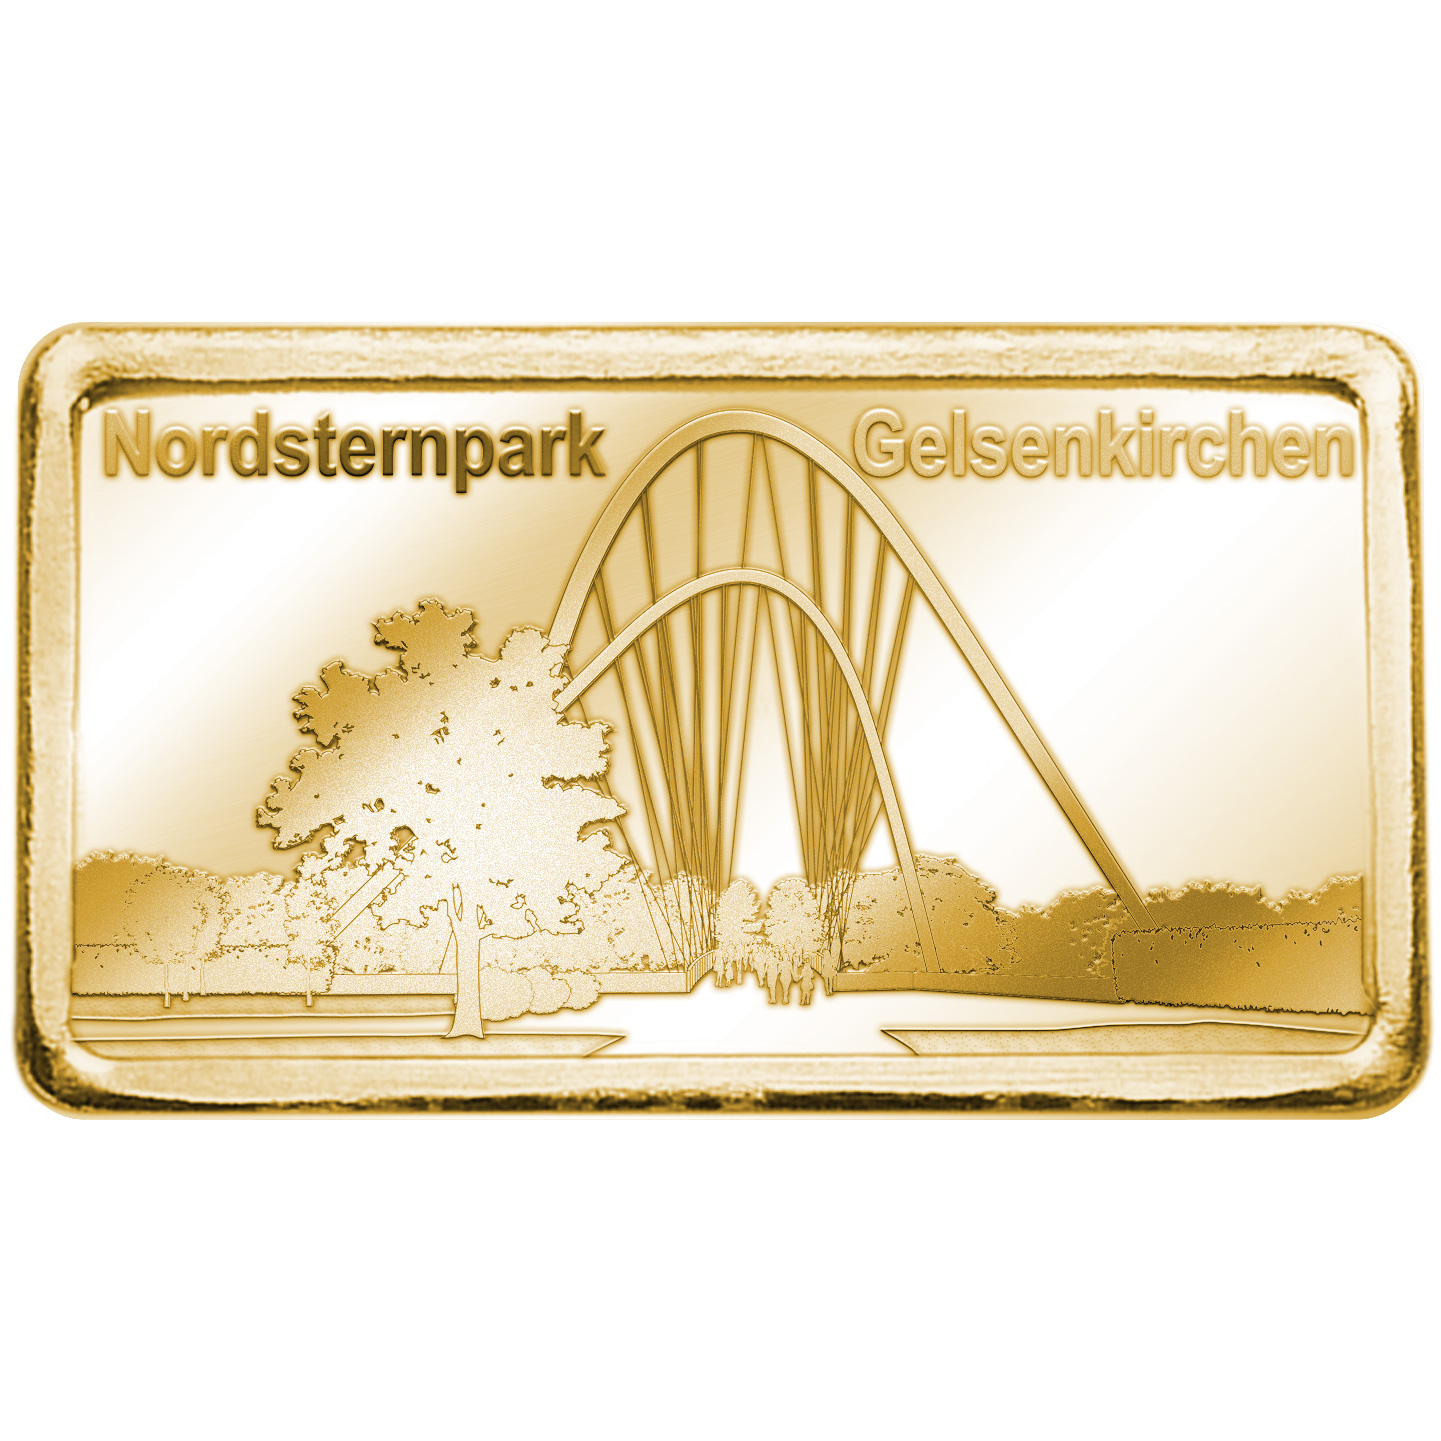 Goldbarren "Nordsternpark Gelsenkirchen"